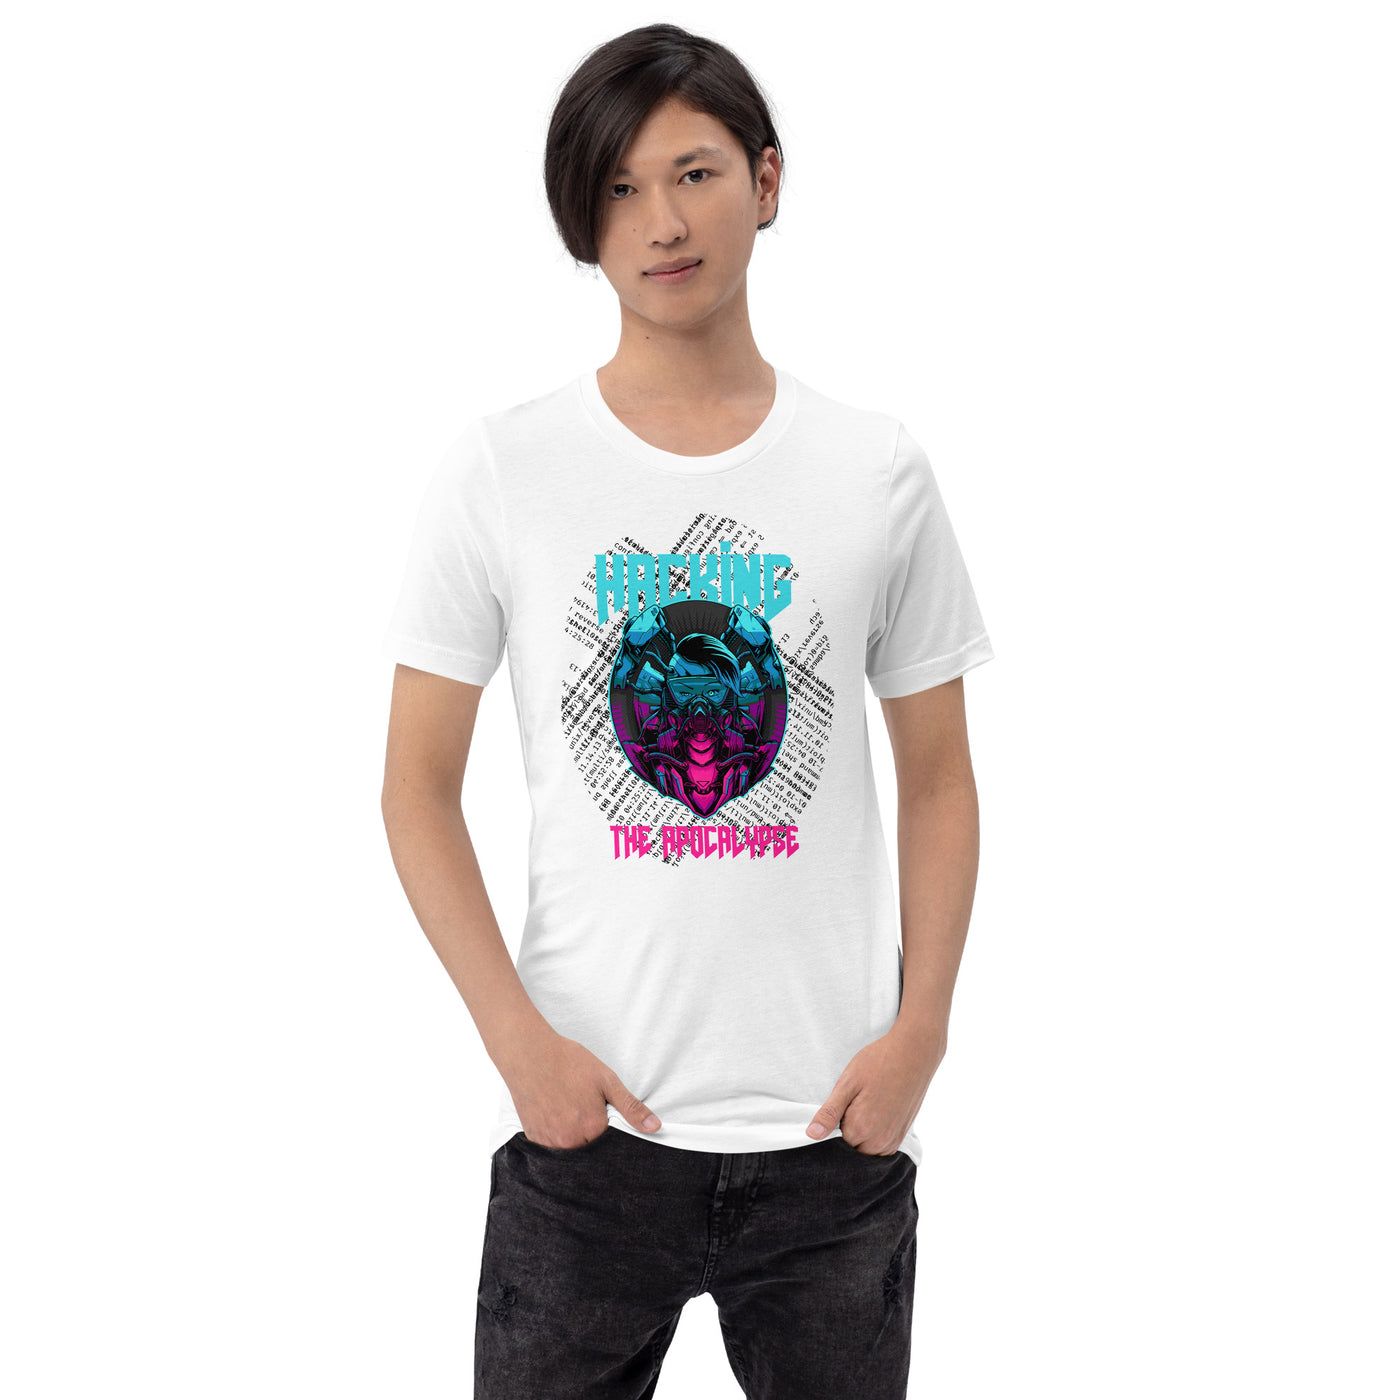 Hacking the apocalypse V2 - Unisex t-shirt